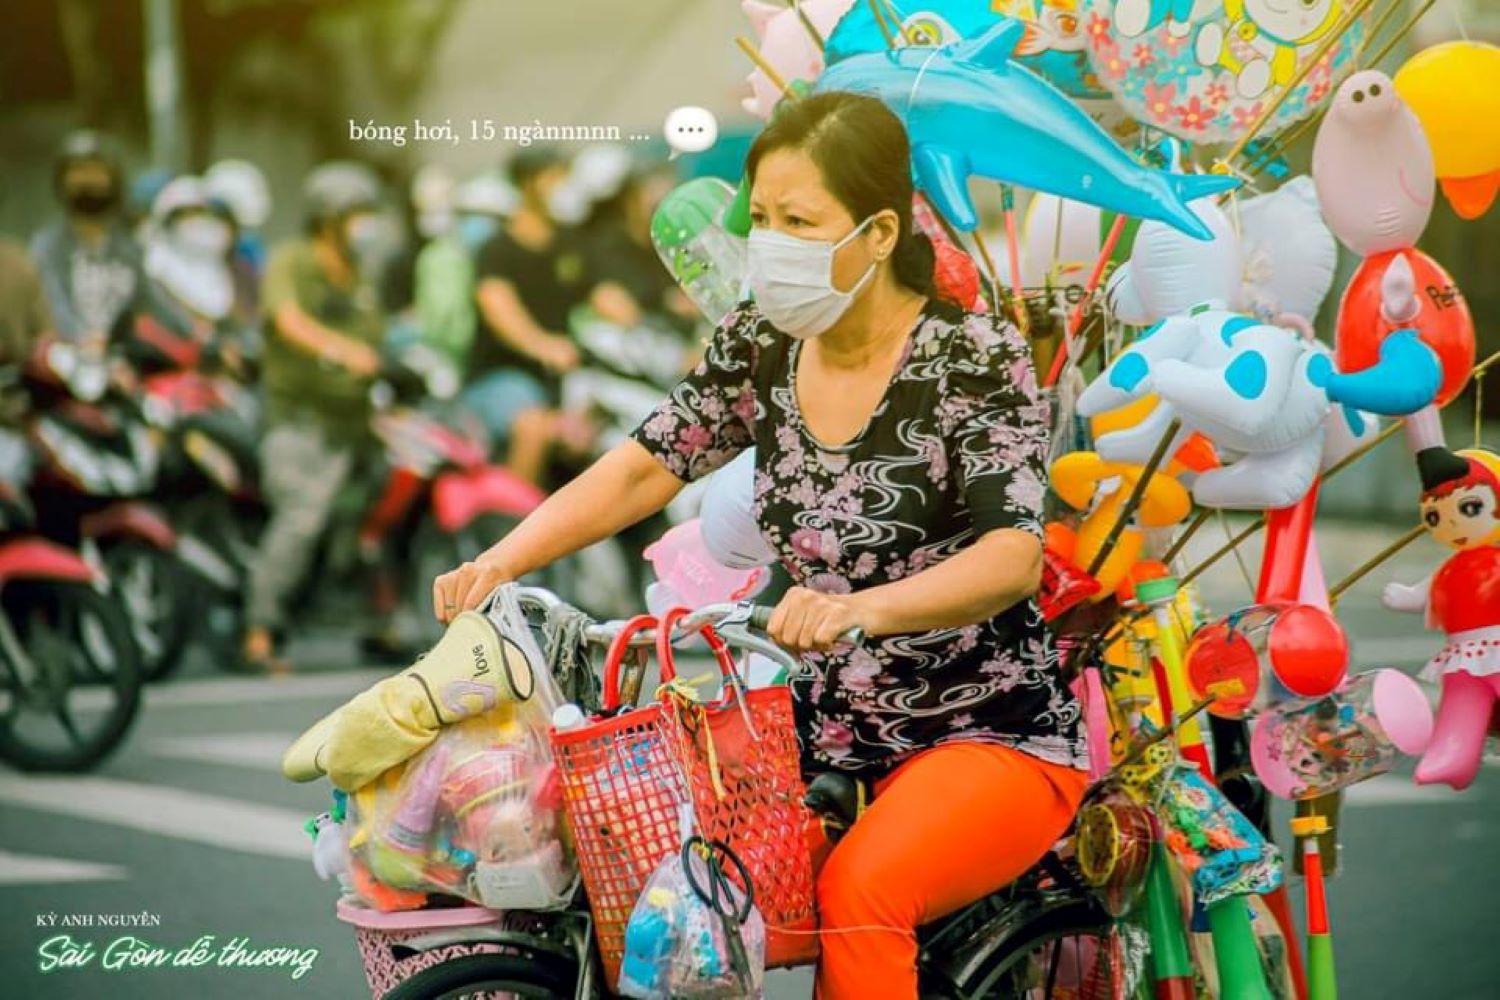 Địa điểm chụp hình: Sài Gòn là nơi lý tưởng để bạn tìm kiếm những địa điểm chụp hình độc đáo. Hãy dạo quanh phố tây, tìm những bức tường lớn có hình ảnh độc đáo, hay ghé thăm các công trình kiến trúc lịch sử. Bạn sẽ lưu giữ được những khoảnh khắc đáng nhớ với những bức ảnh tuyệt đẹp của mình.